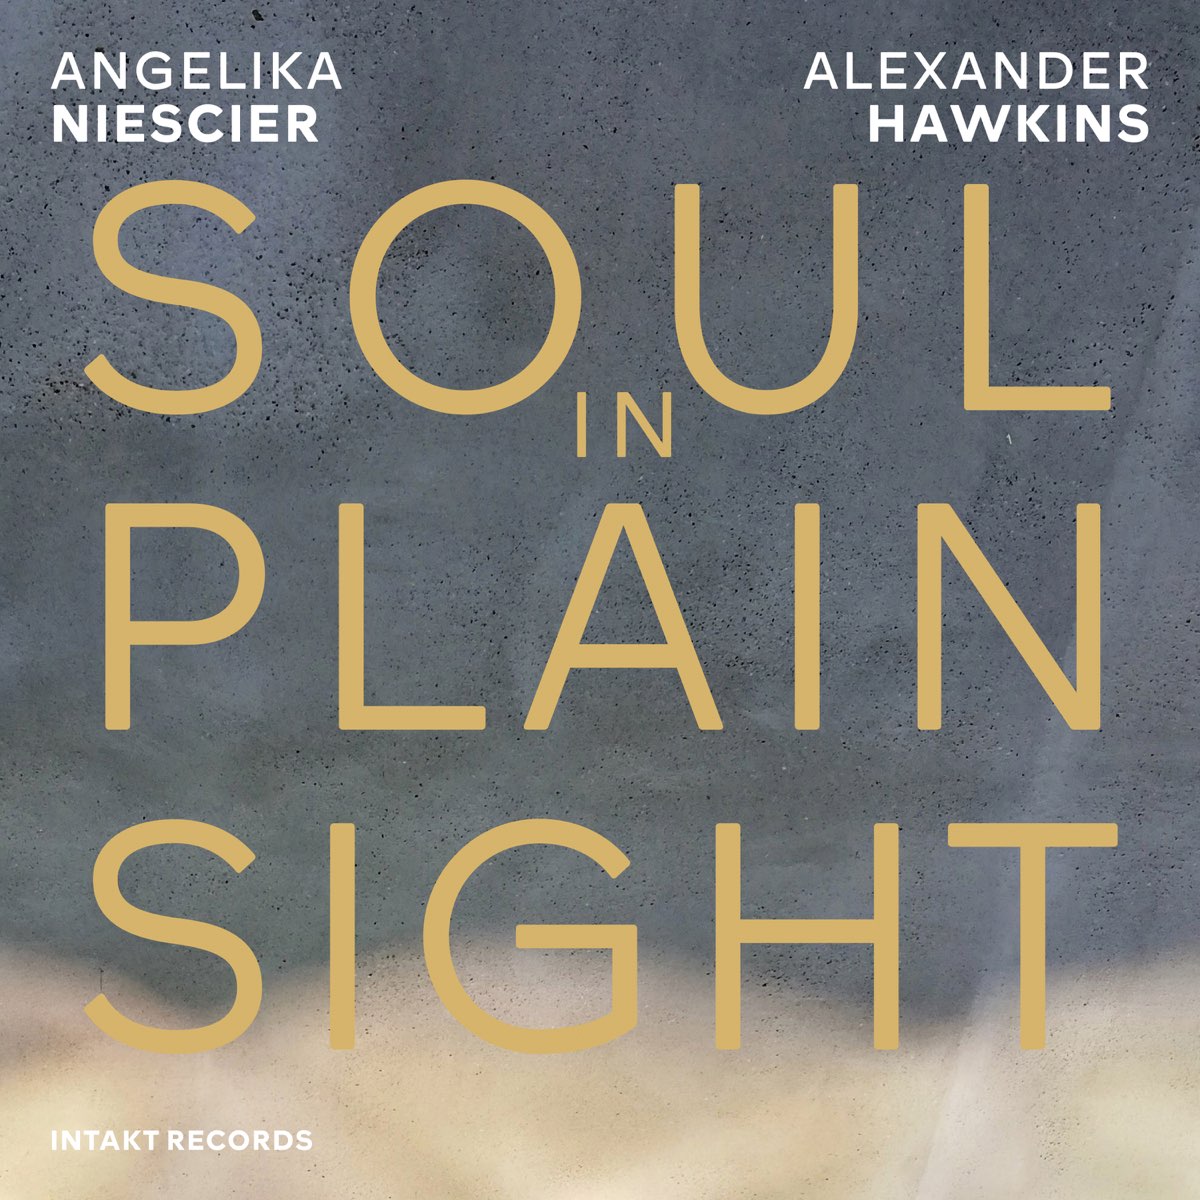 Soul in Plain Sight (feat. Angelika Niescier u0026 Alexander Hawkins) - Album  by Angelika Niescier u0026 Alexander Hawkins - Apple Music